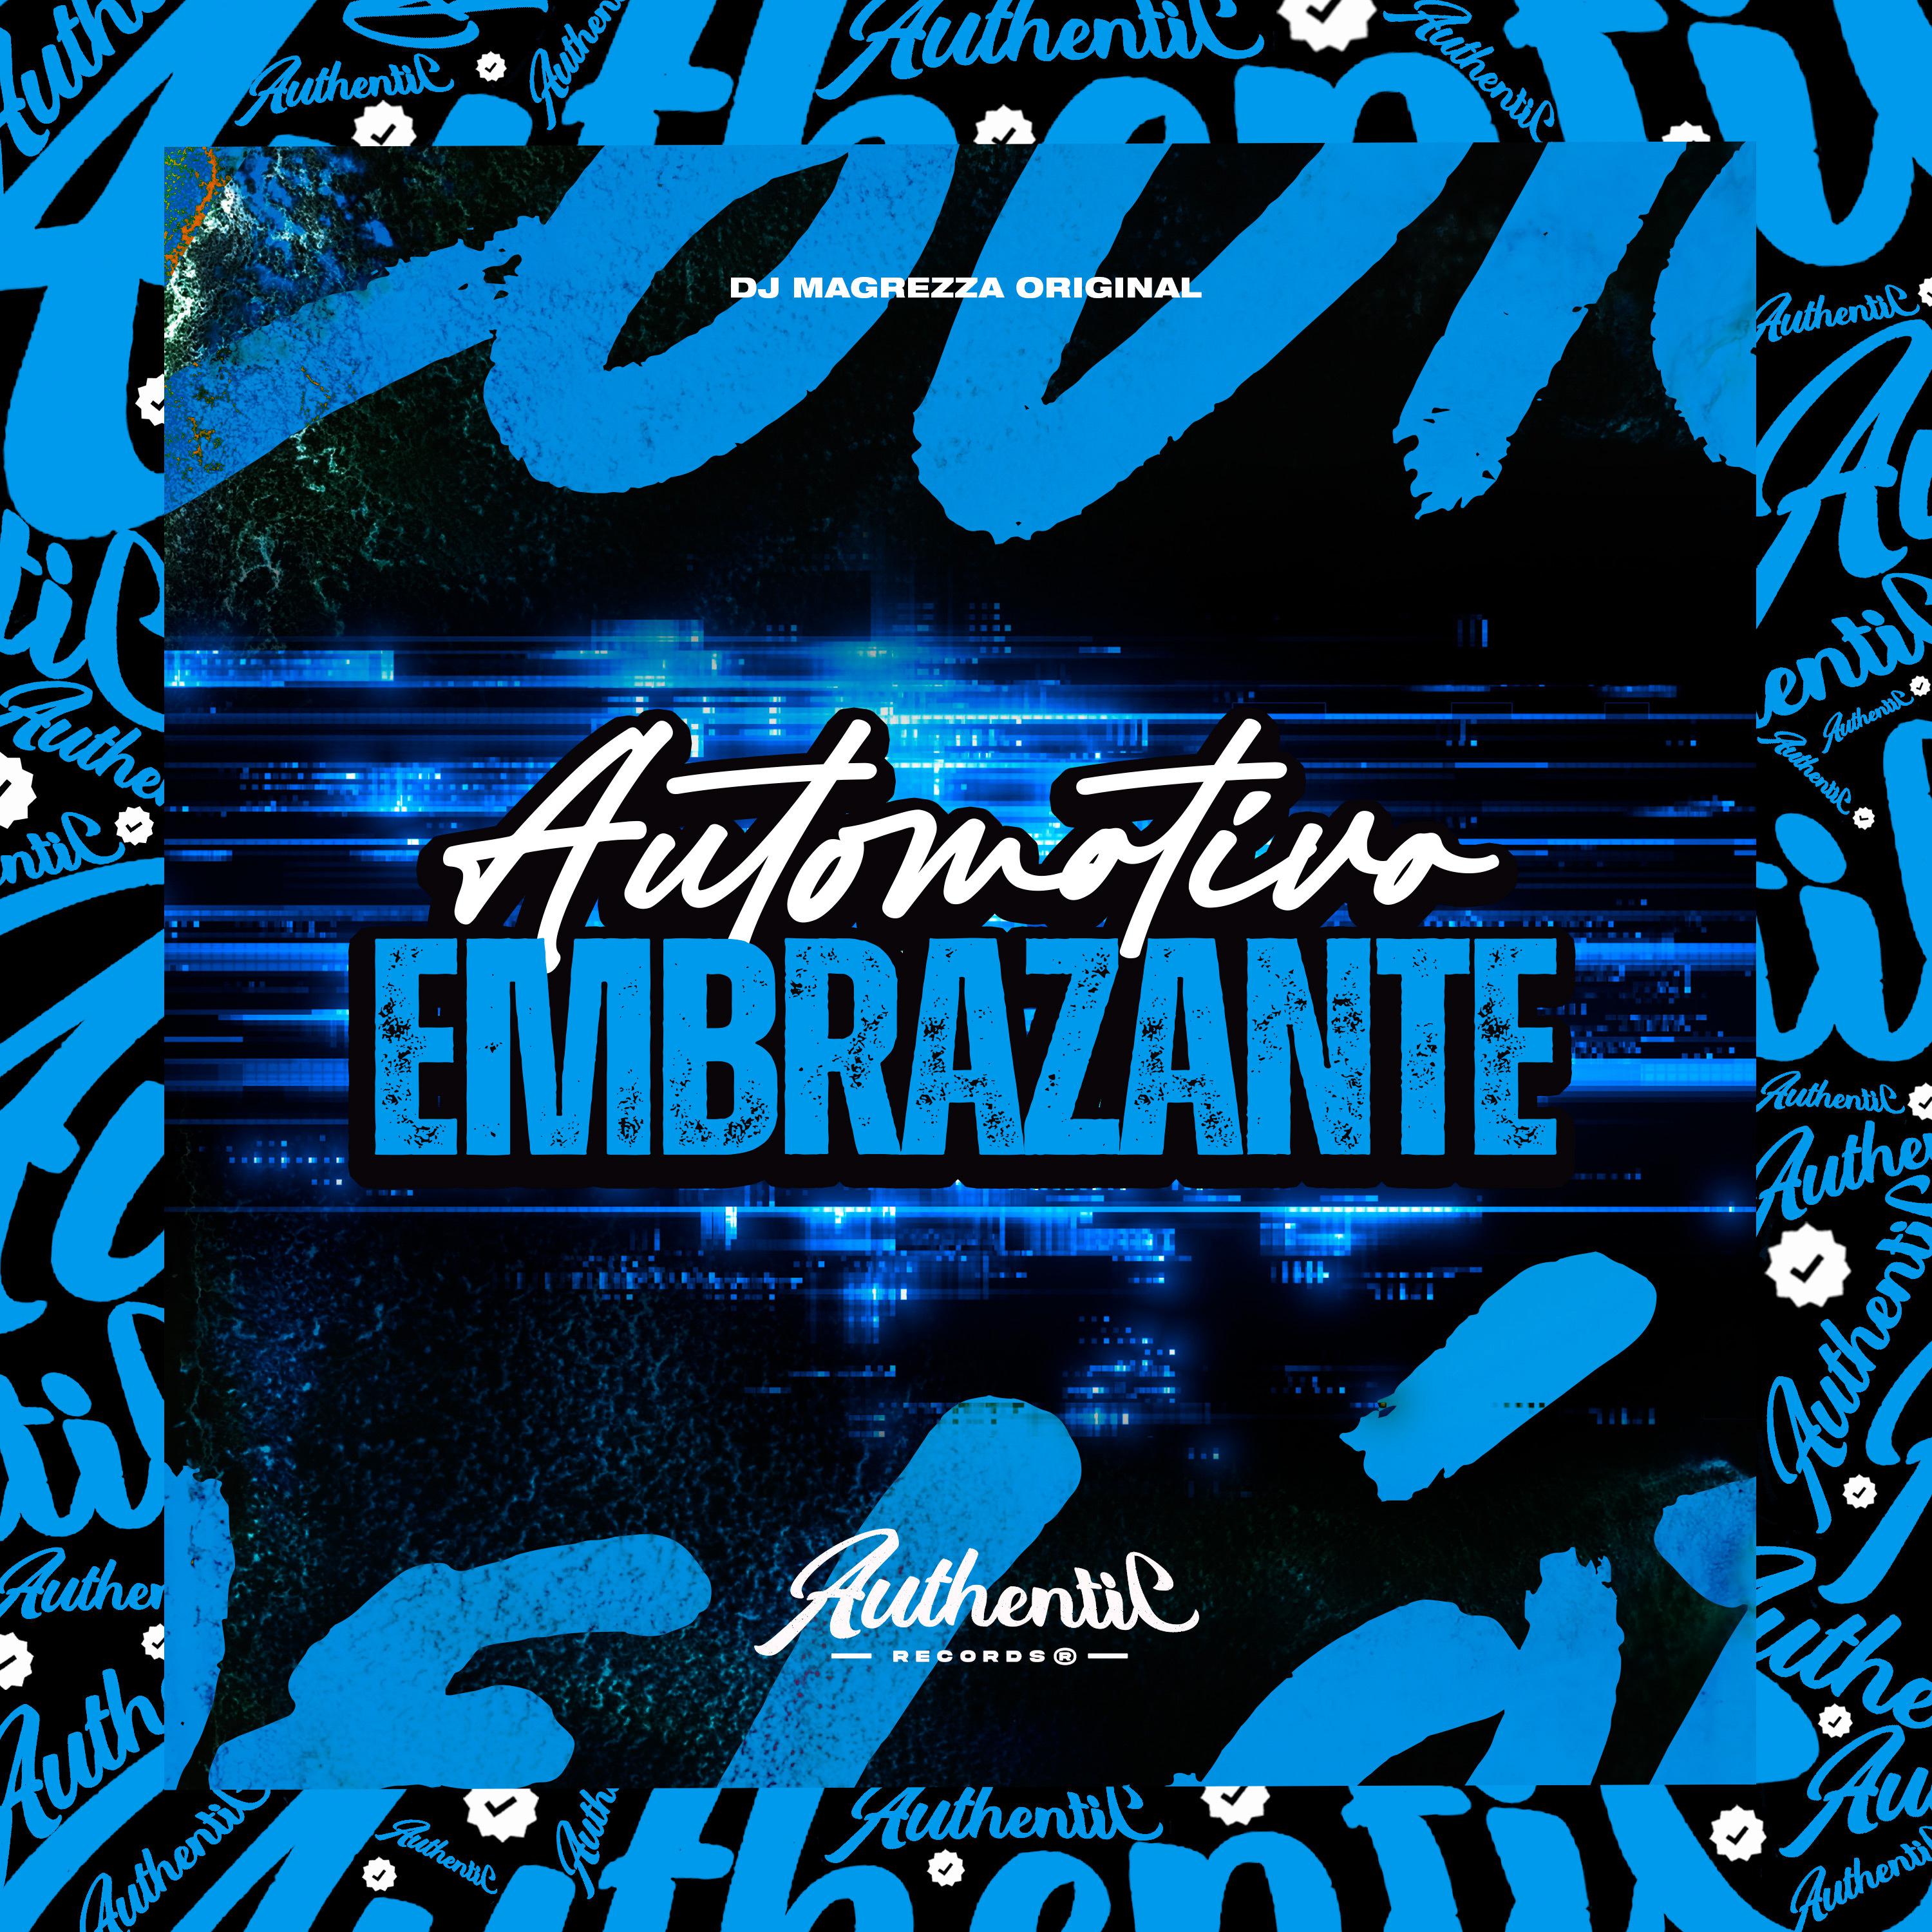 Постер альбома Automotivo Embrazante